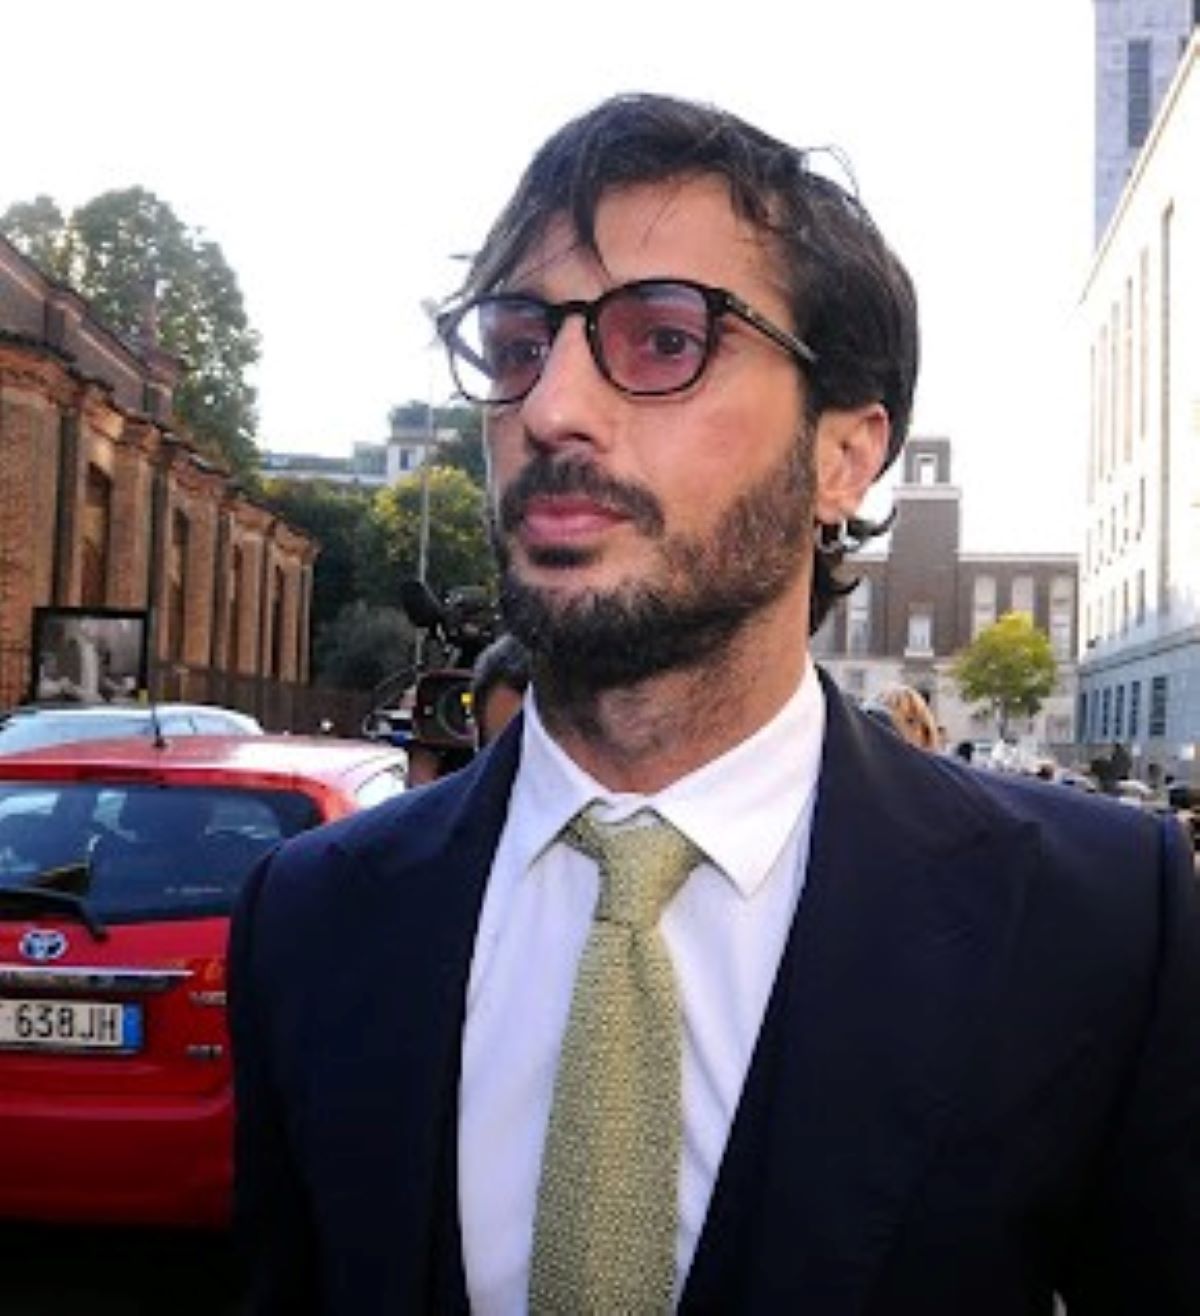 Fabrizio Corona Decisione Giudici Domiciliari